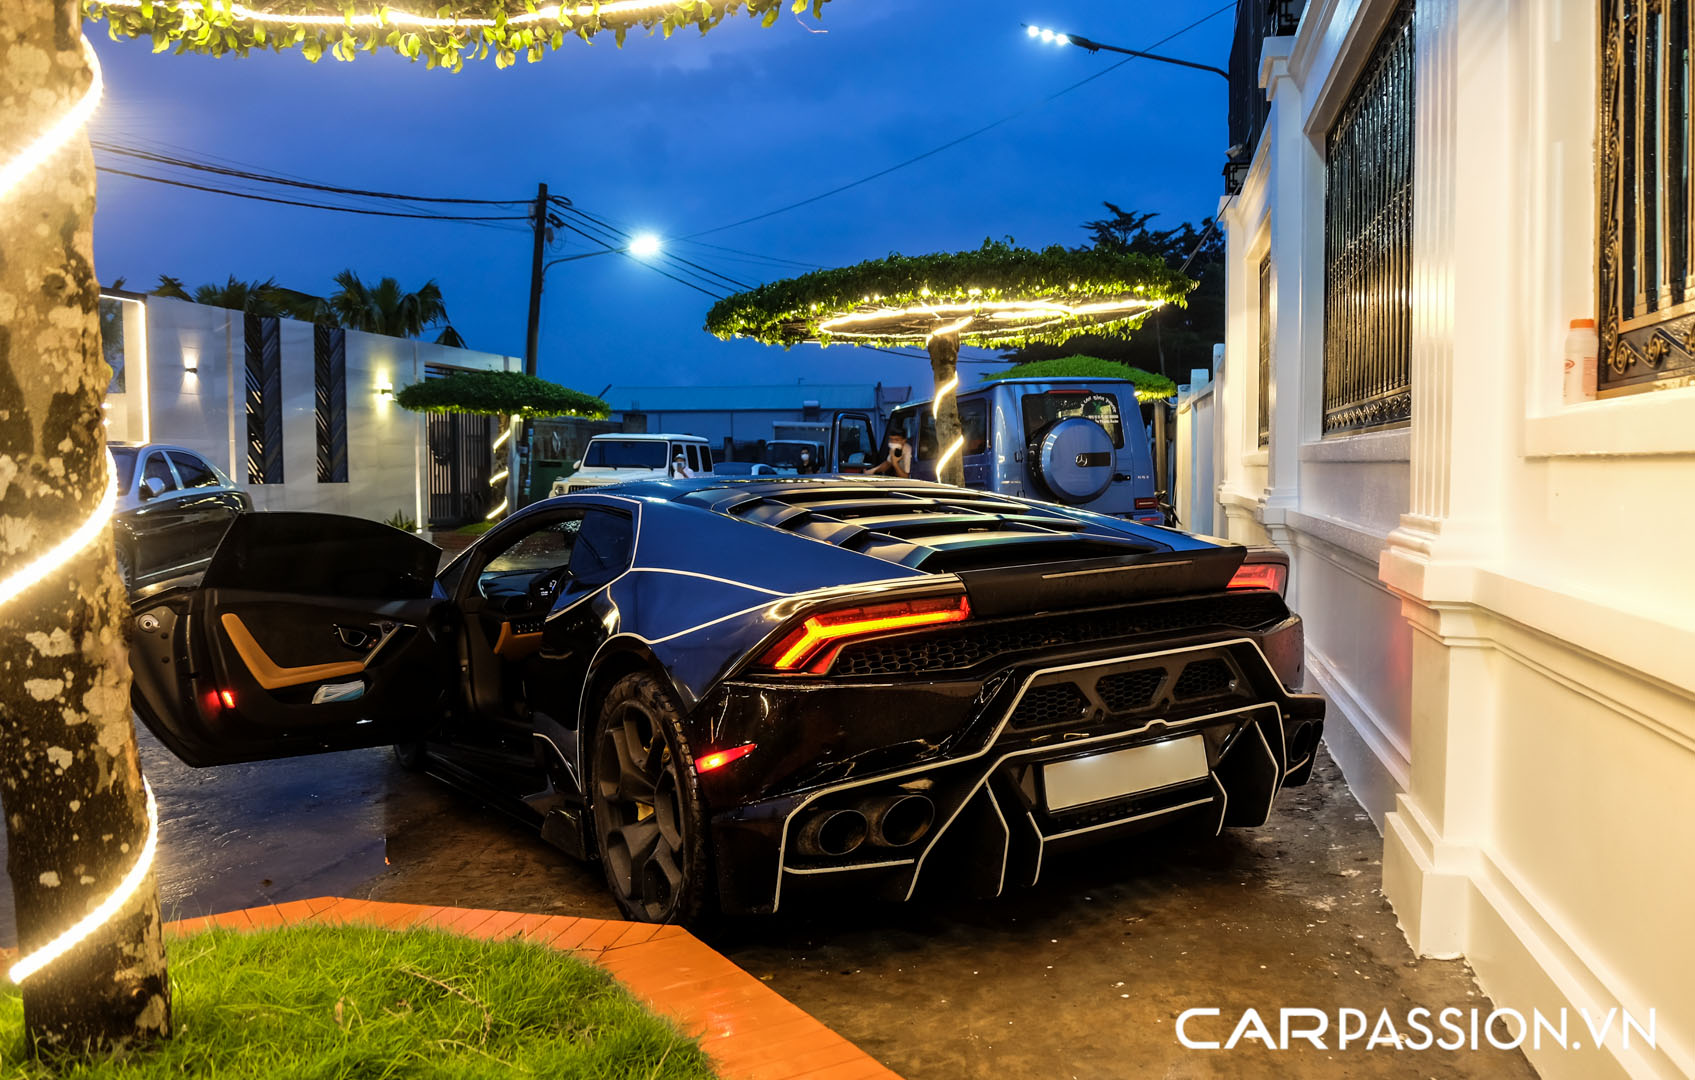 CP-Bộ đôi Lamborghini Huracan độ độc đáo7.jpg